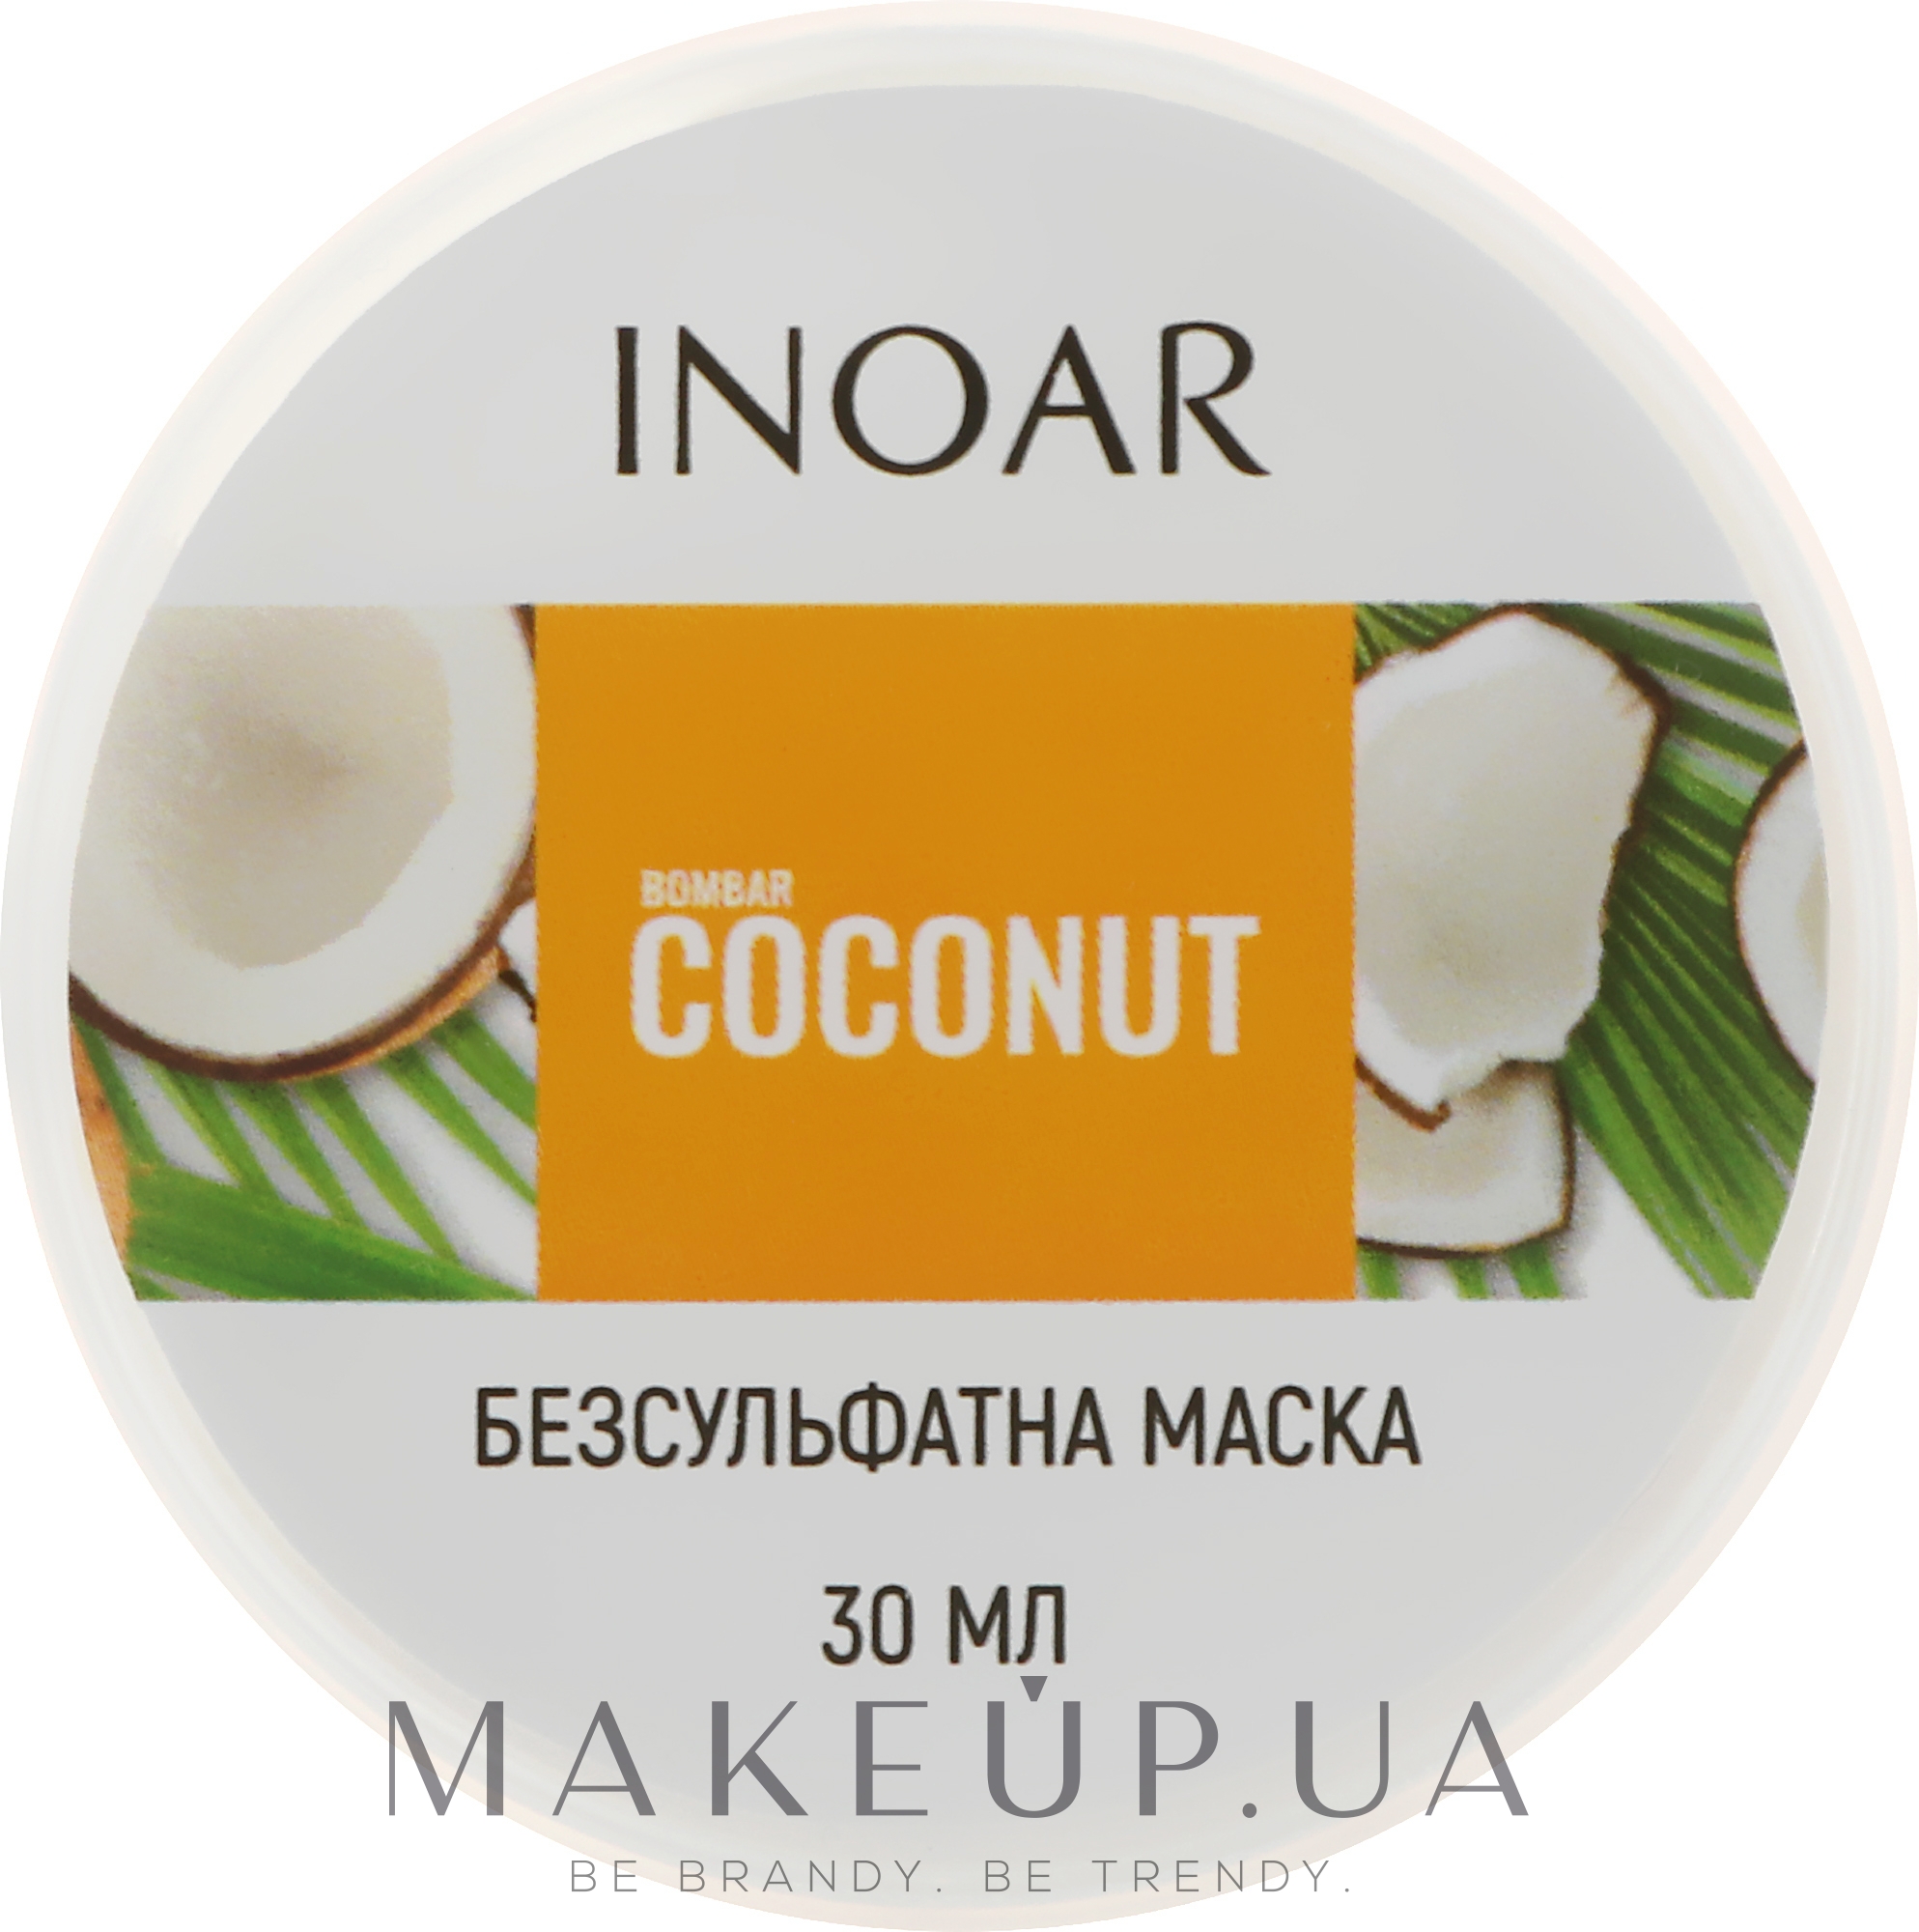 Маска для росту волосся без сульфатів "Кокос & біотин" - Inoar Bombar Coconut Mascara — фото 30ml